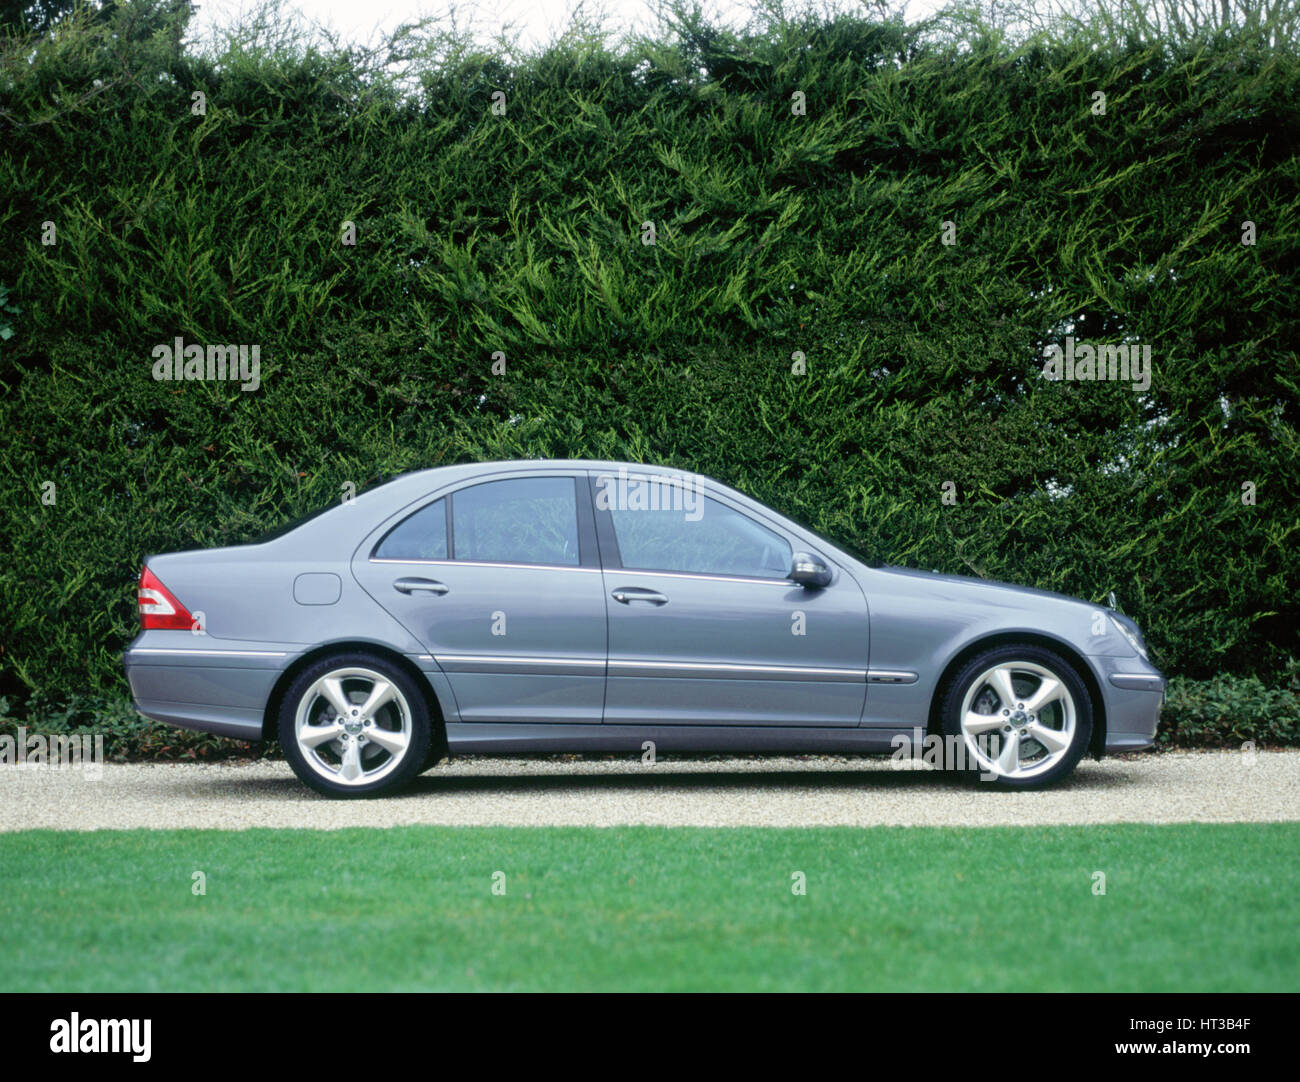 2004 Mercedes Benz C230 Kompressor Künstler Unbekannt Stockfotografie Alamy